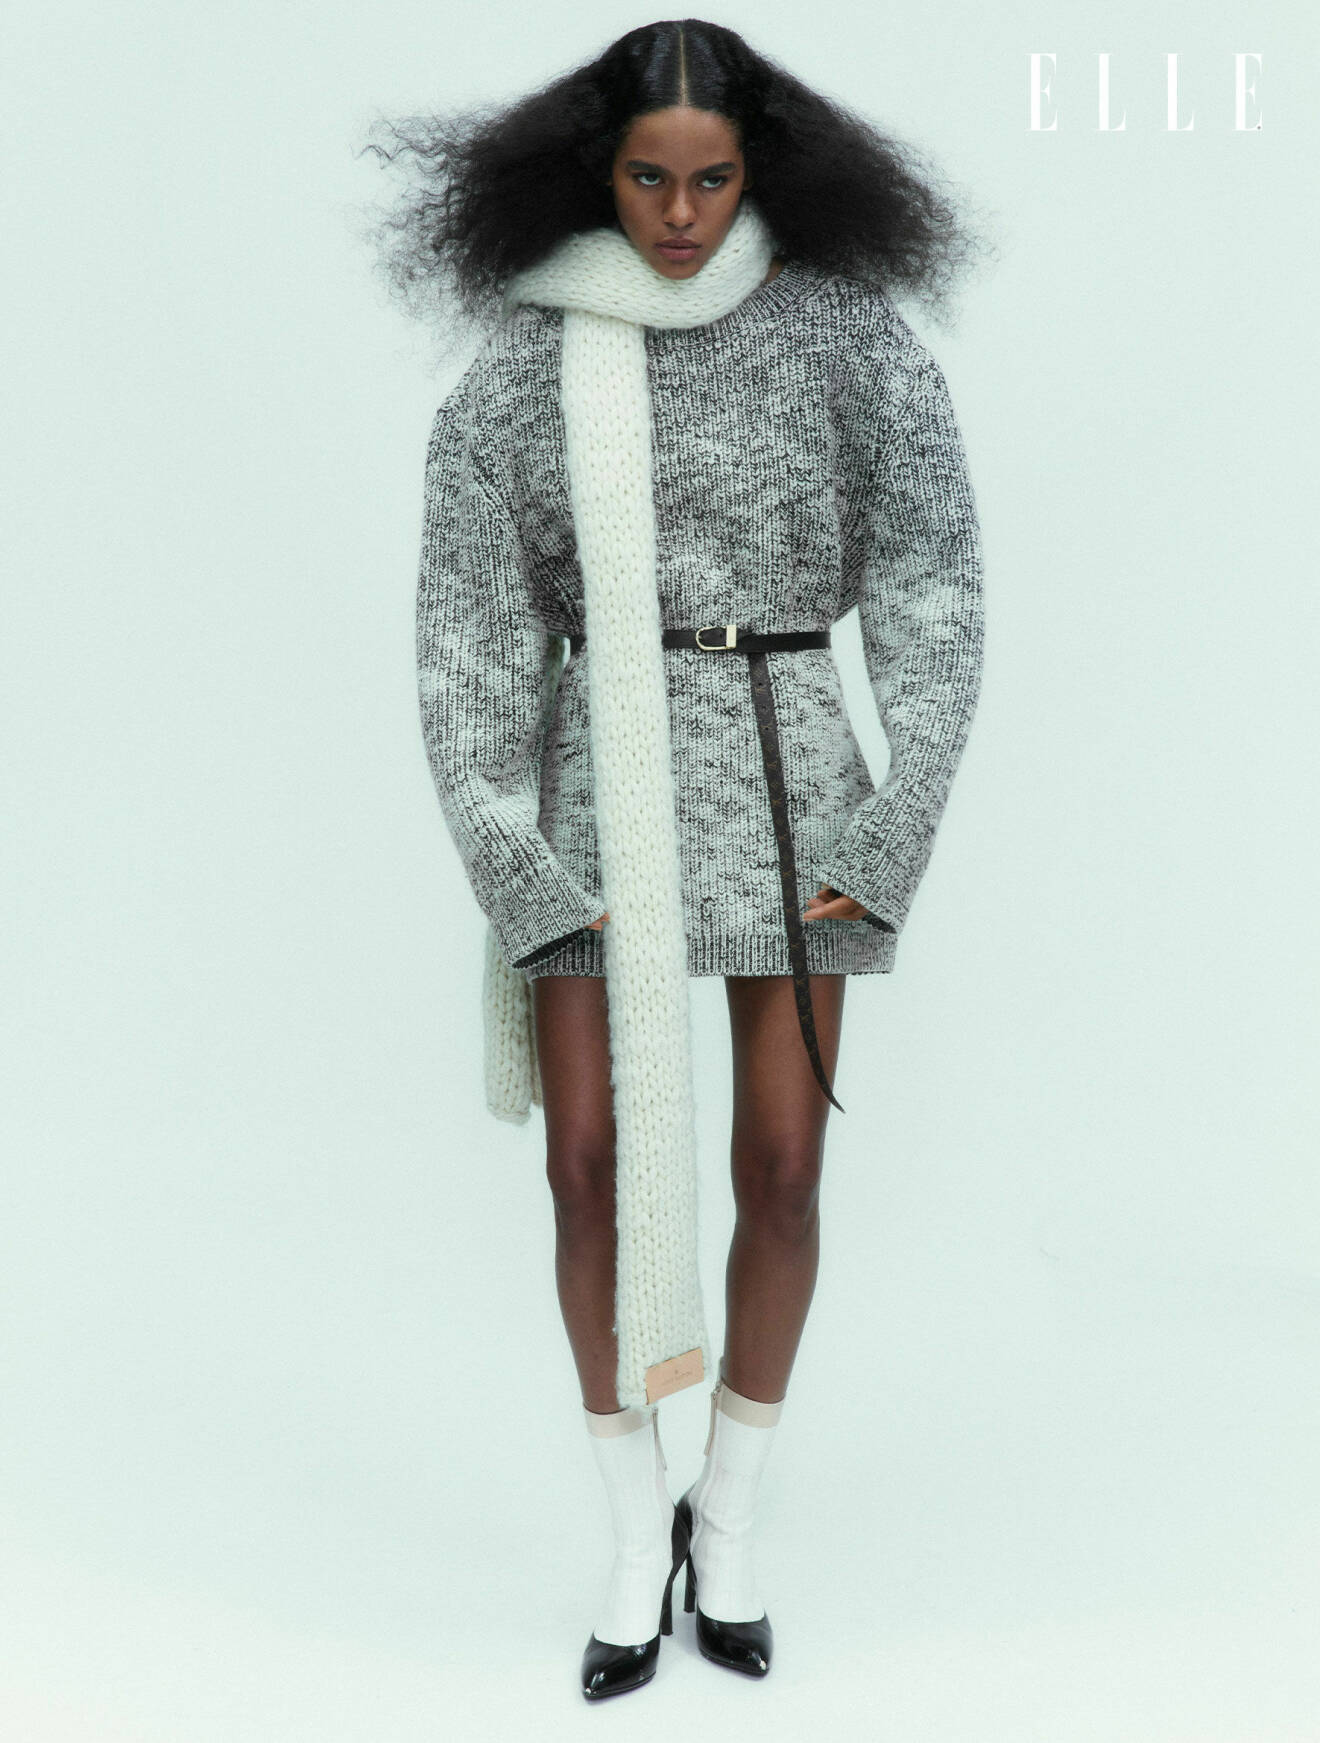 Fotomodellen bär en stickad klänning i grått och en vit stickad halsduk, allt från Louis Vuitton